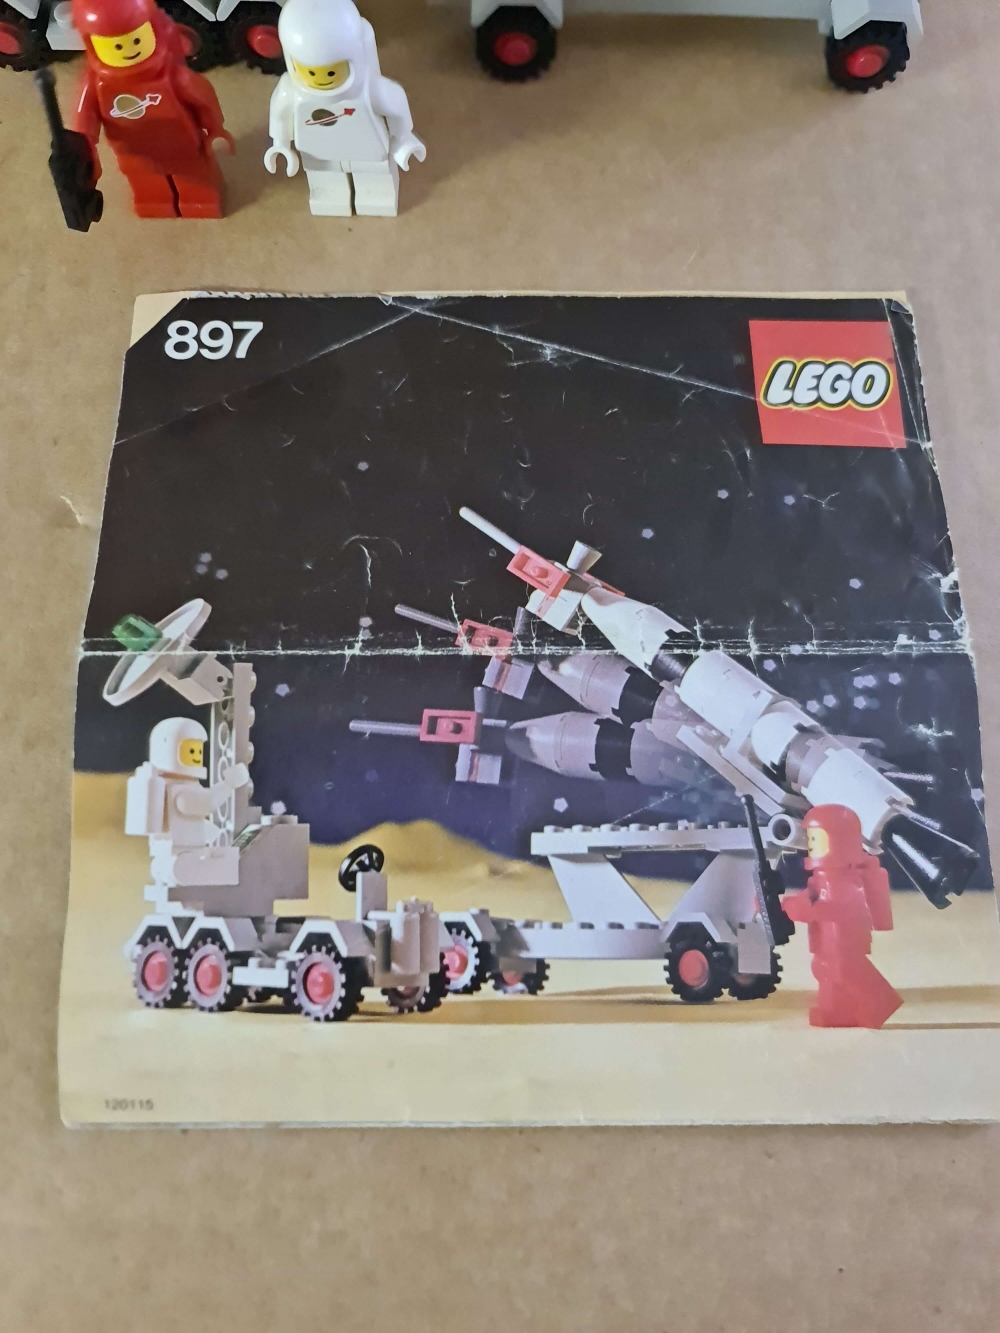 Sett 897 fra Lego Classic Space serien

Komplett med manual. 
